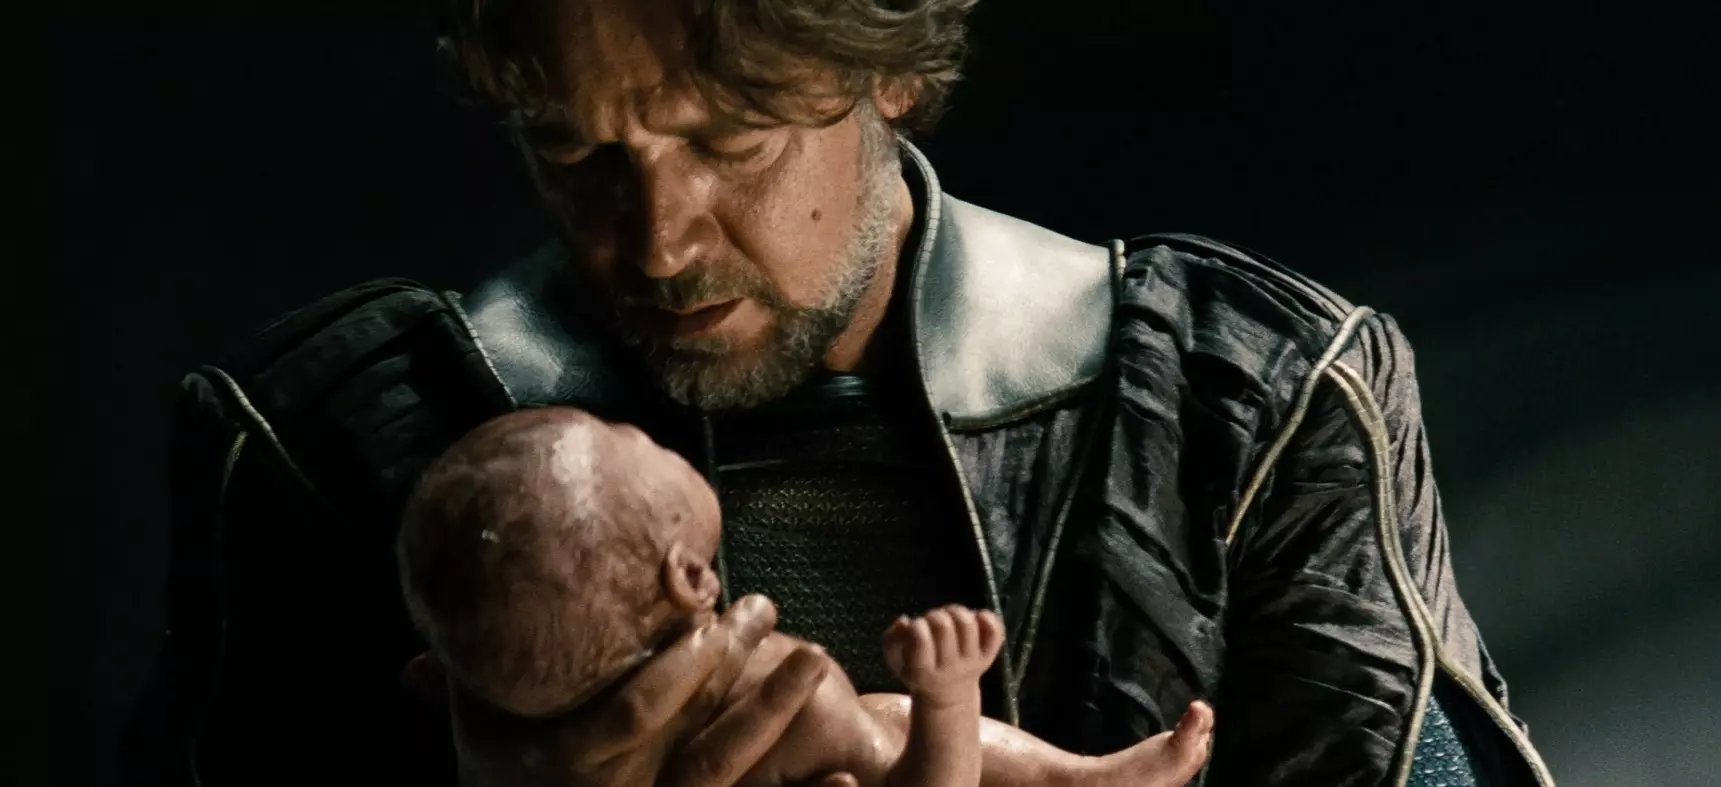 Jor-El holding the newborn Kal-El